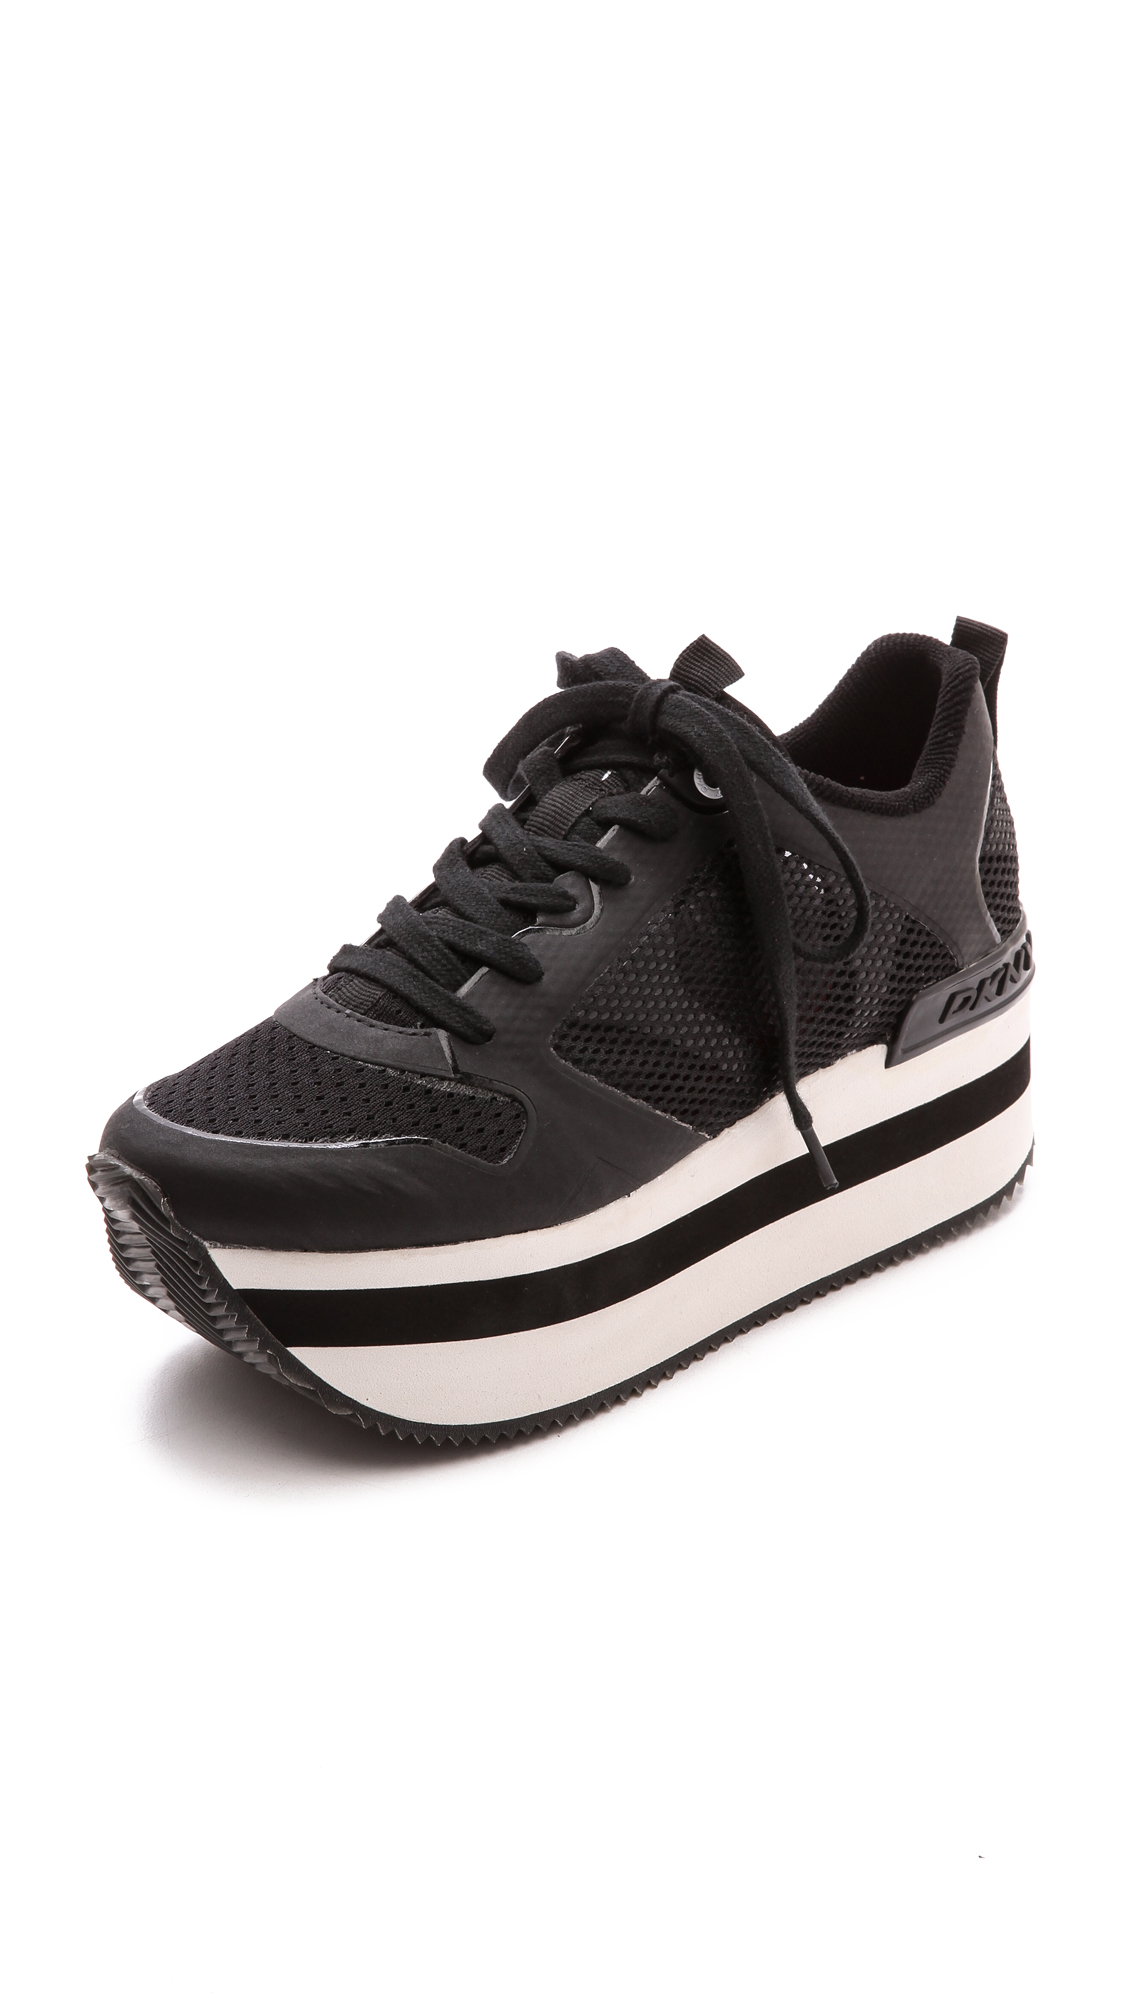 Lyst - Dkny Jessica Runway Platform Sneakers - Black in Black